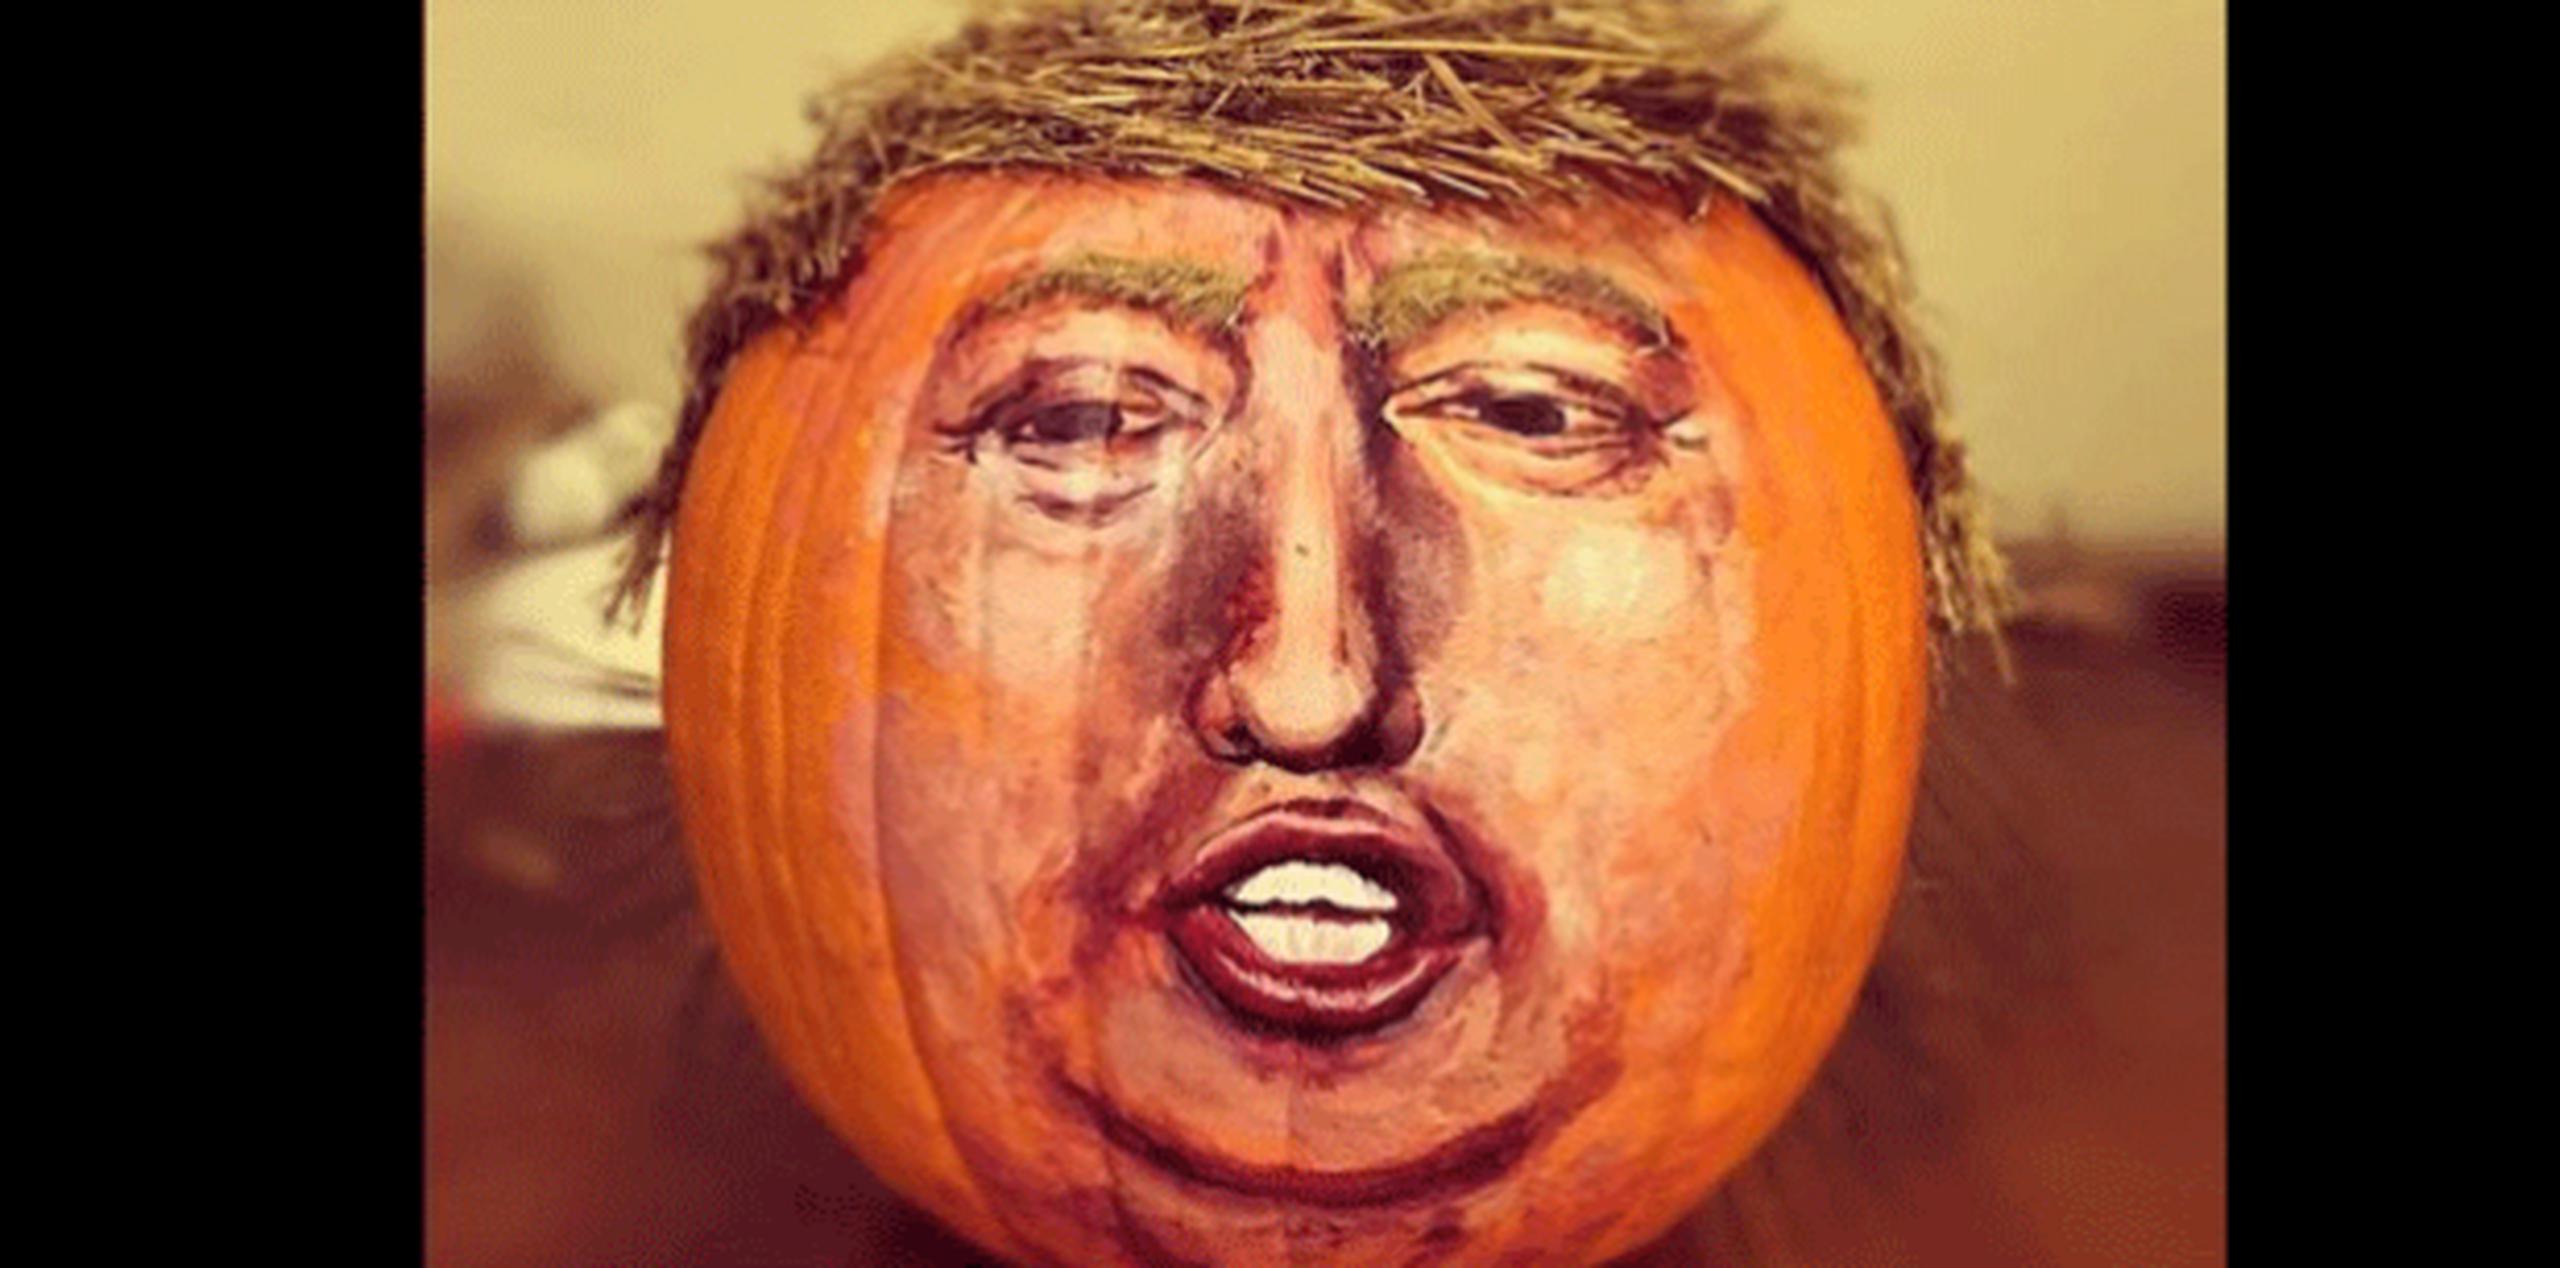 Según una encuesta publicada por el diario Usa Today a comienzos de semana, un 32 % de los que se pondrán máscaras por Halloween elegirán a Trump y un 16 % a Clinton. (Archivo)